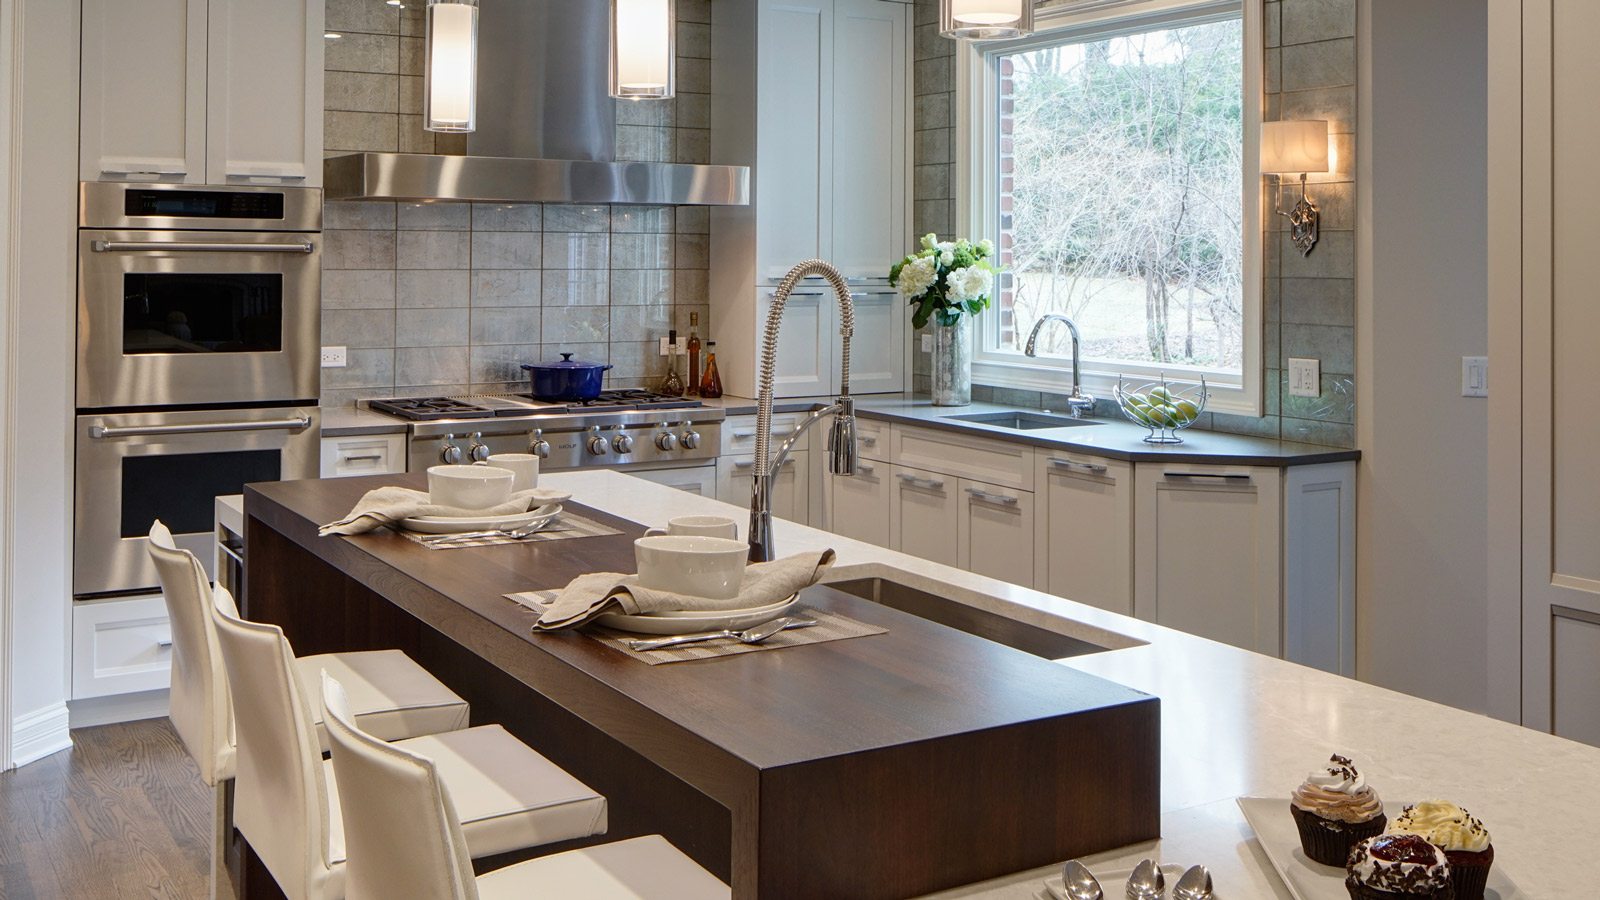 Glen Ellyn luxury kitchen design